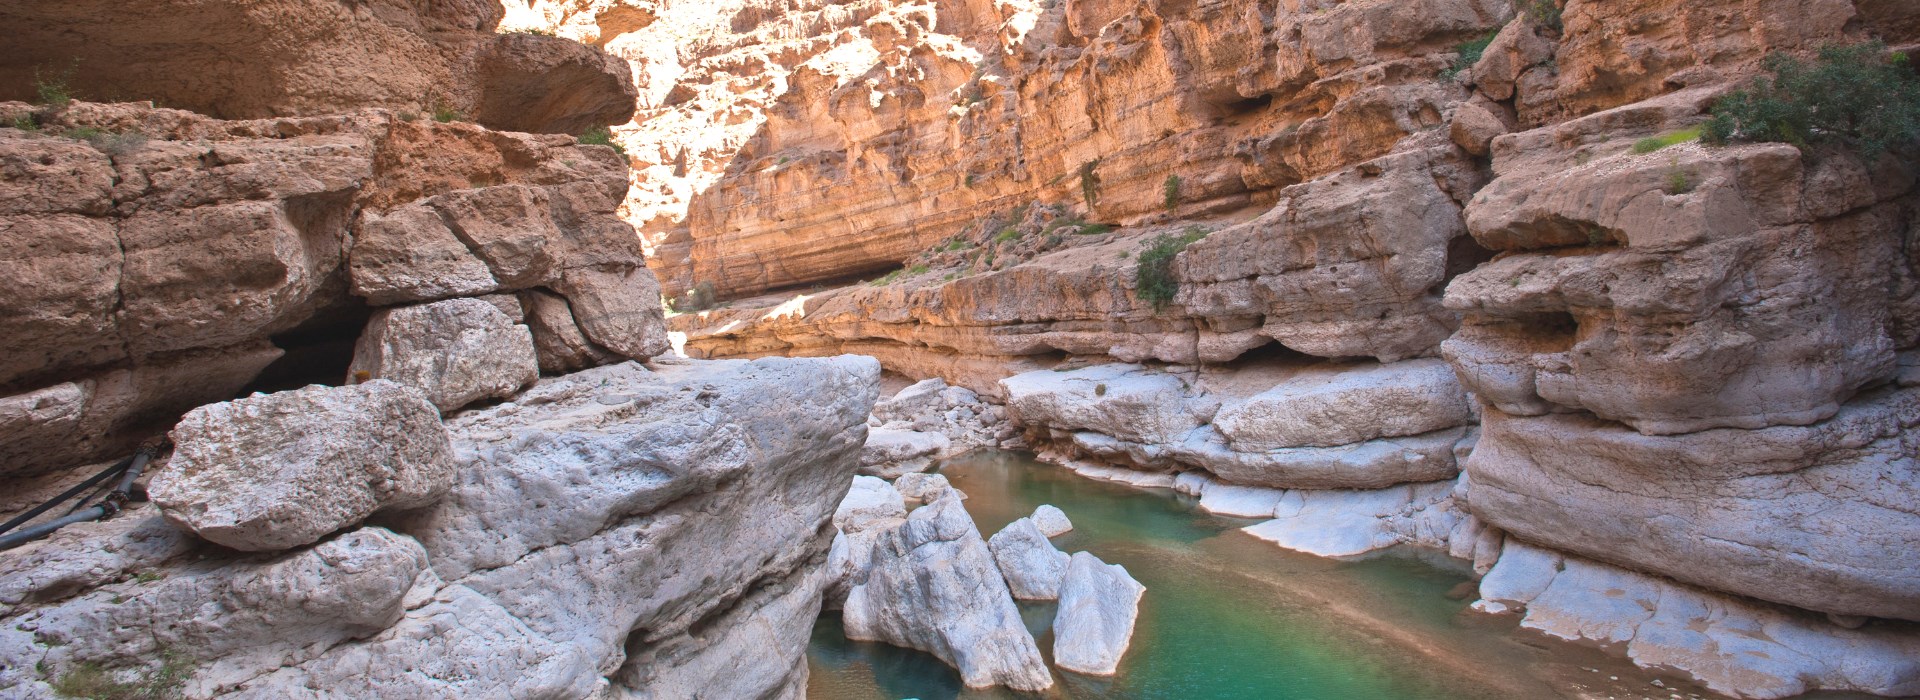 Visiter Wadi Shab - Oman